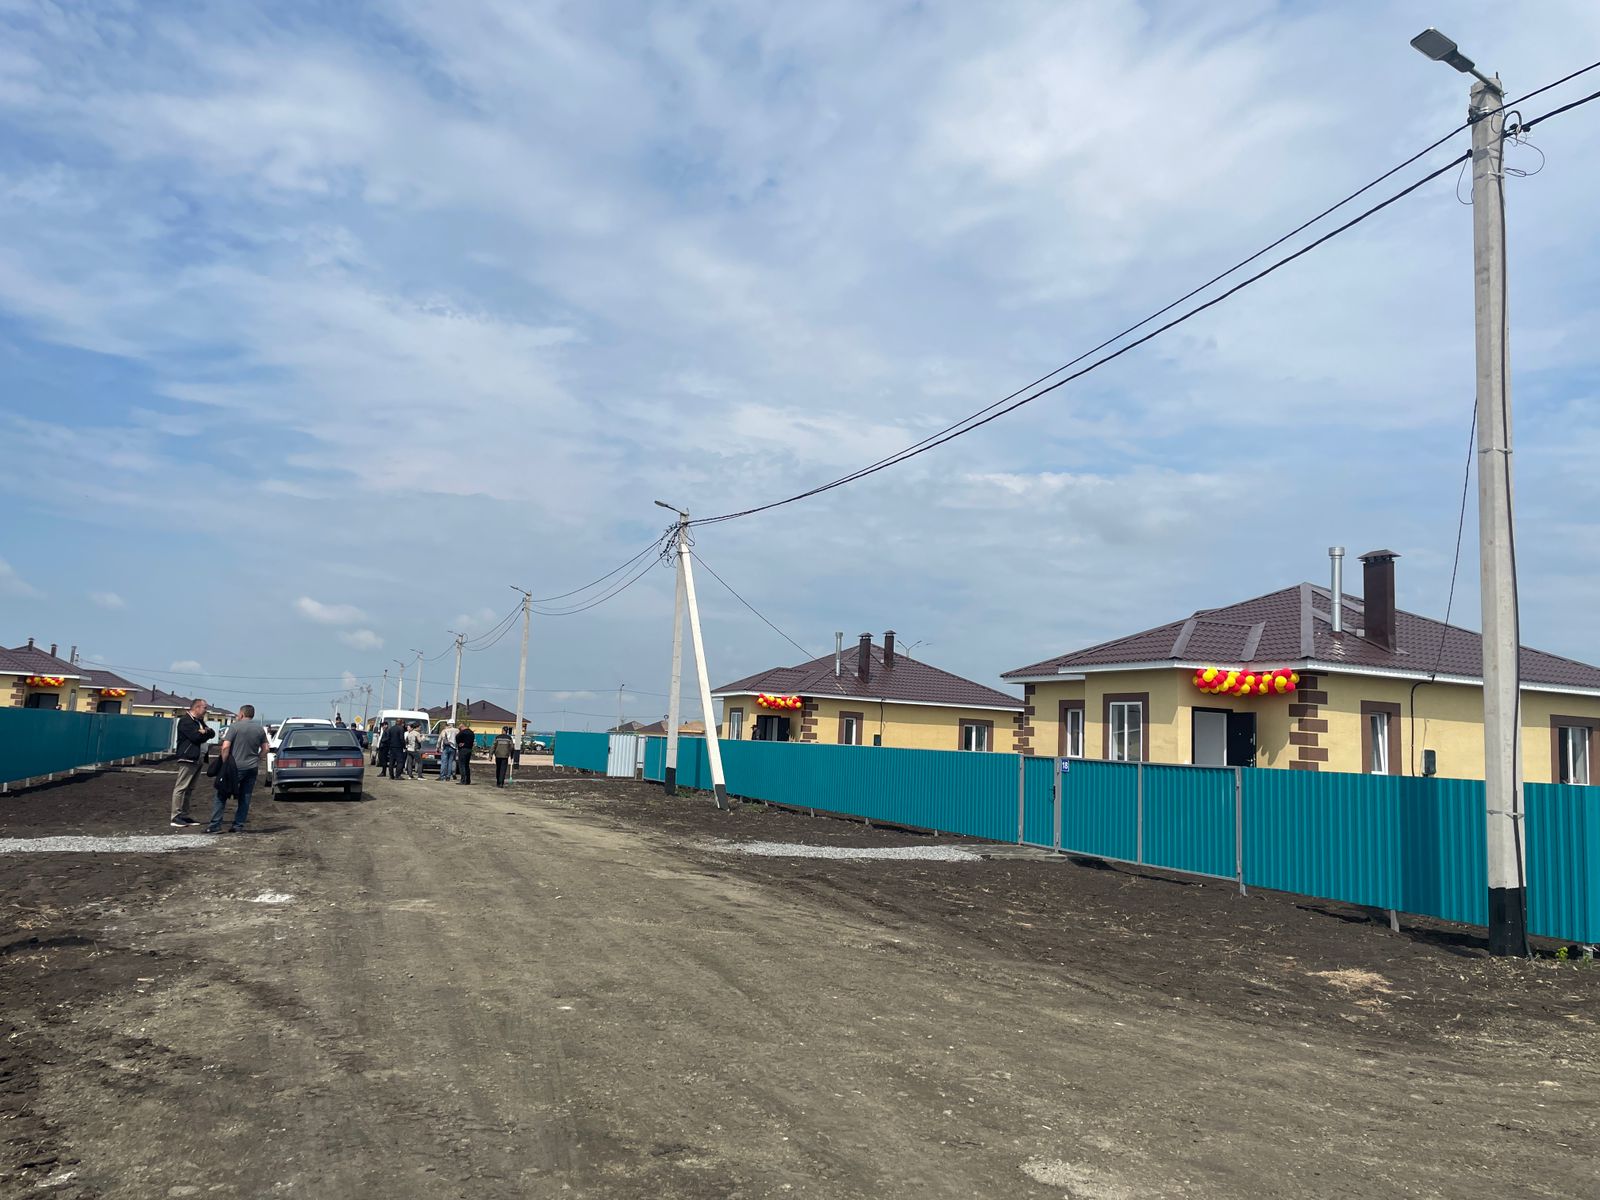 Солнечный-2, Бирлик, Петропавловск, новые дома для пострадавших от паводка